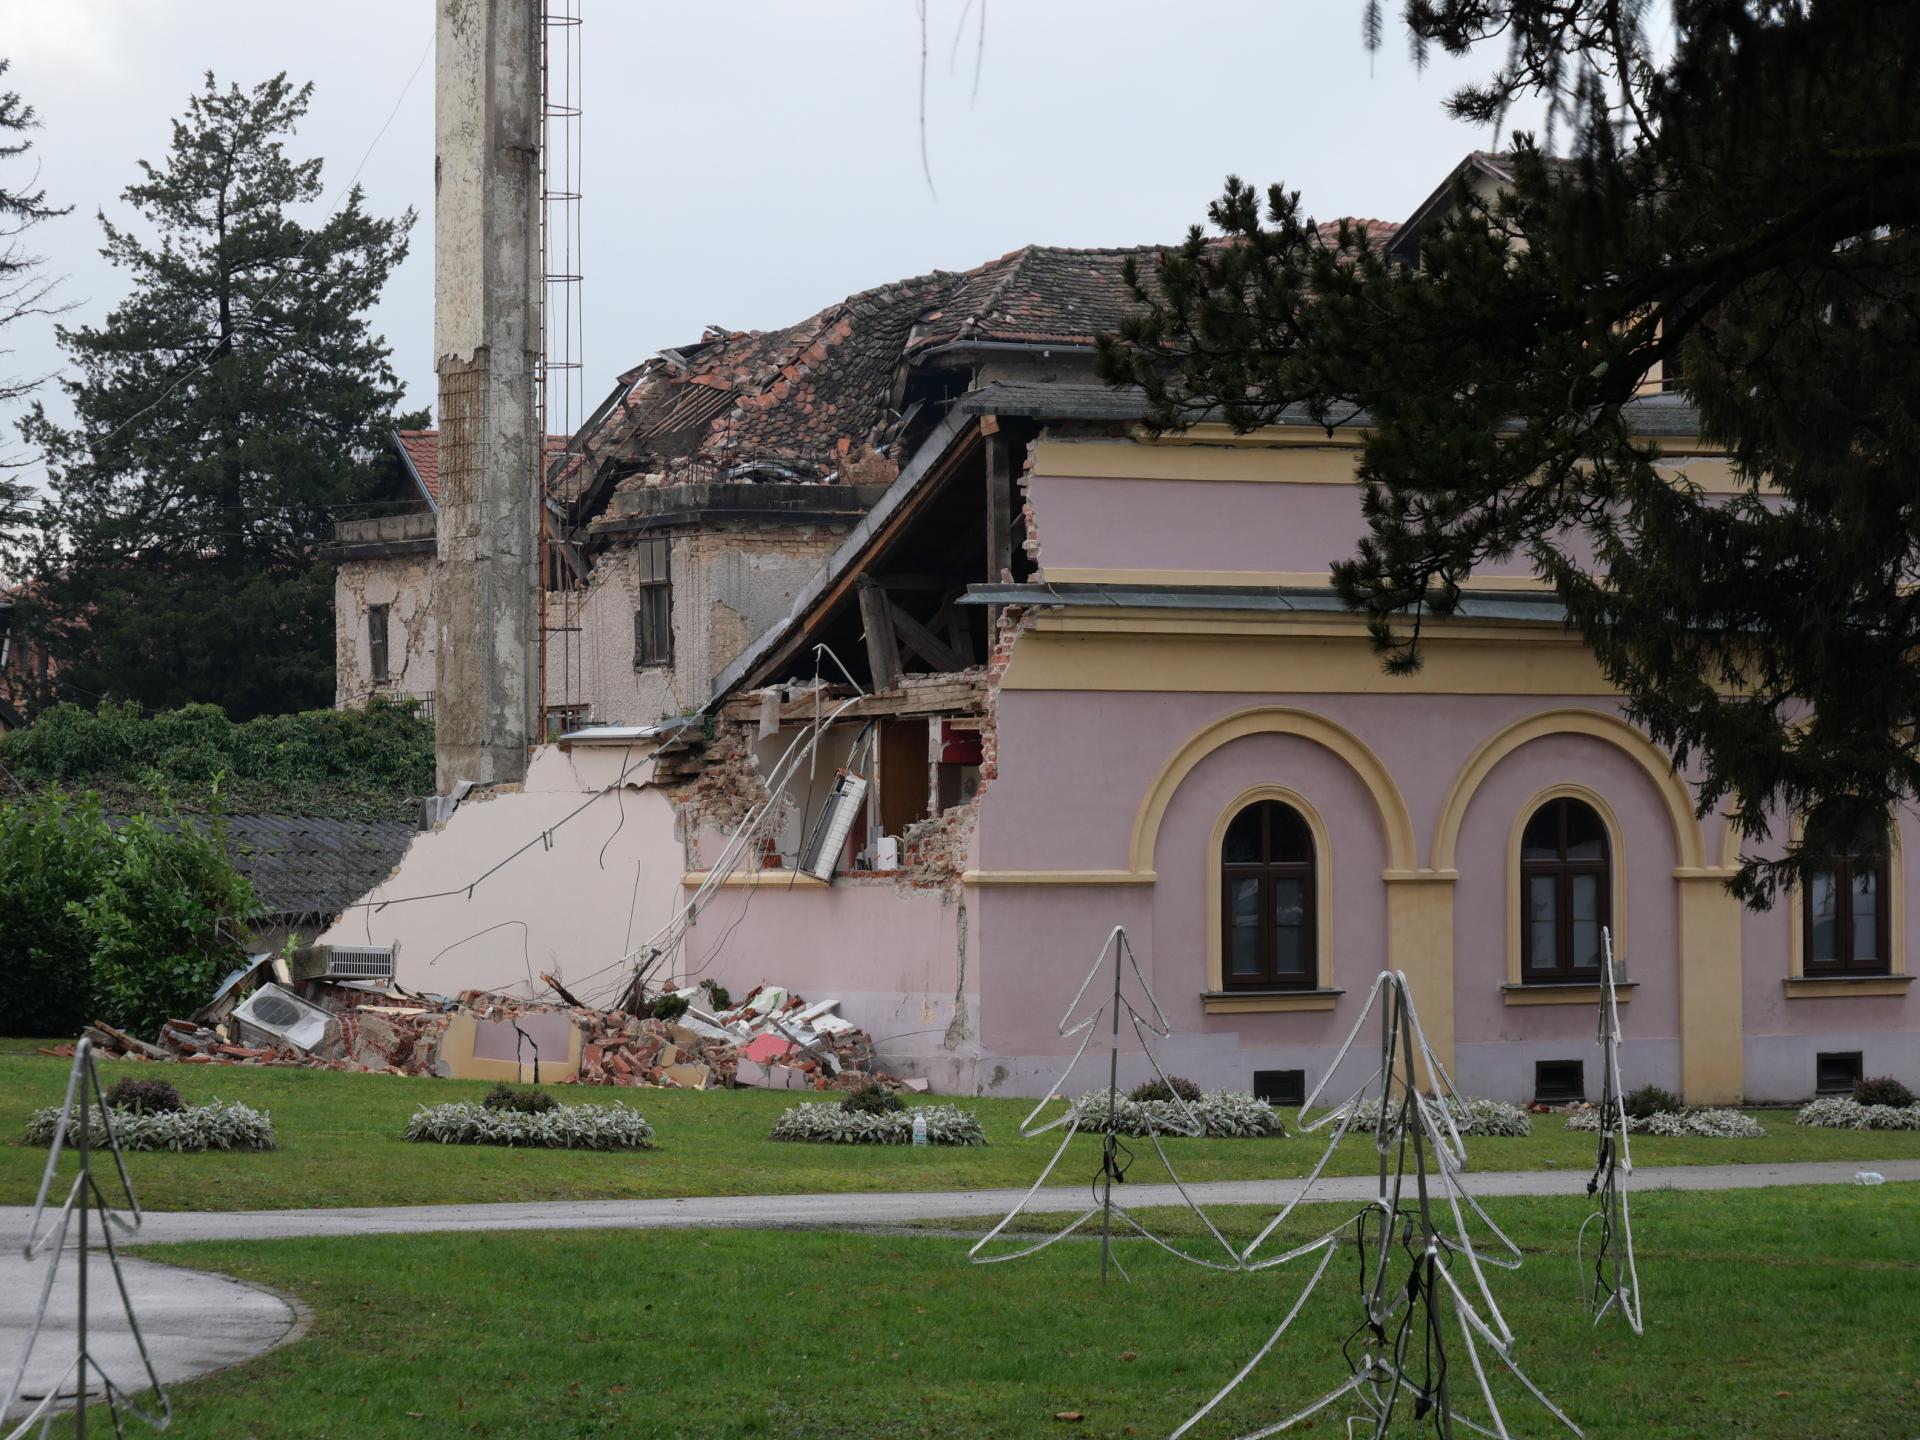 Mešihat Islamske zajednice i predstavnici deset zemalja u posjeti potresom pogođenom Sisku